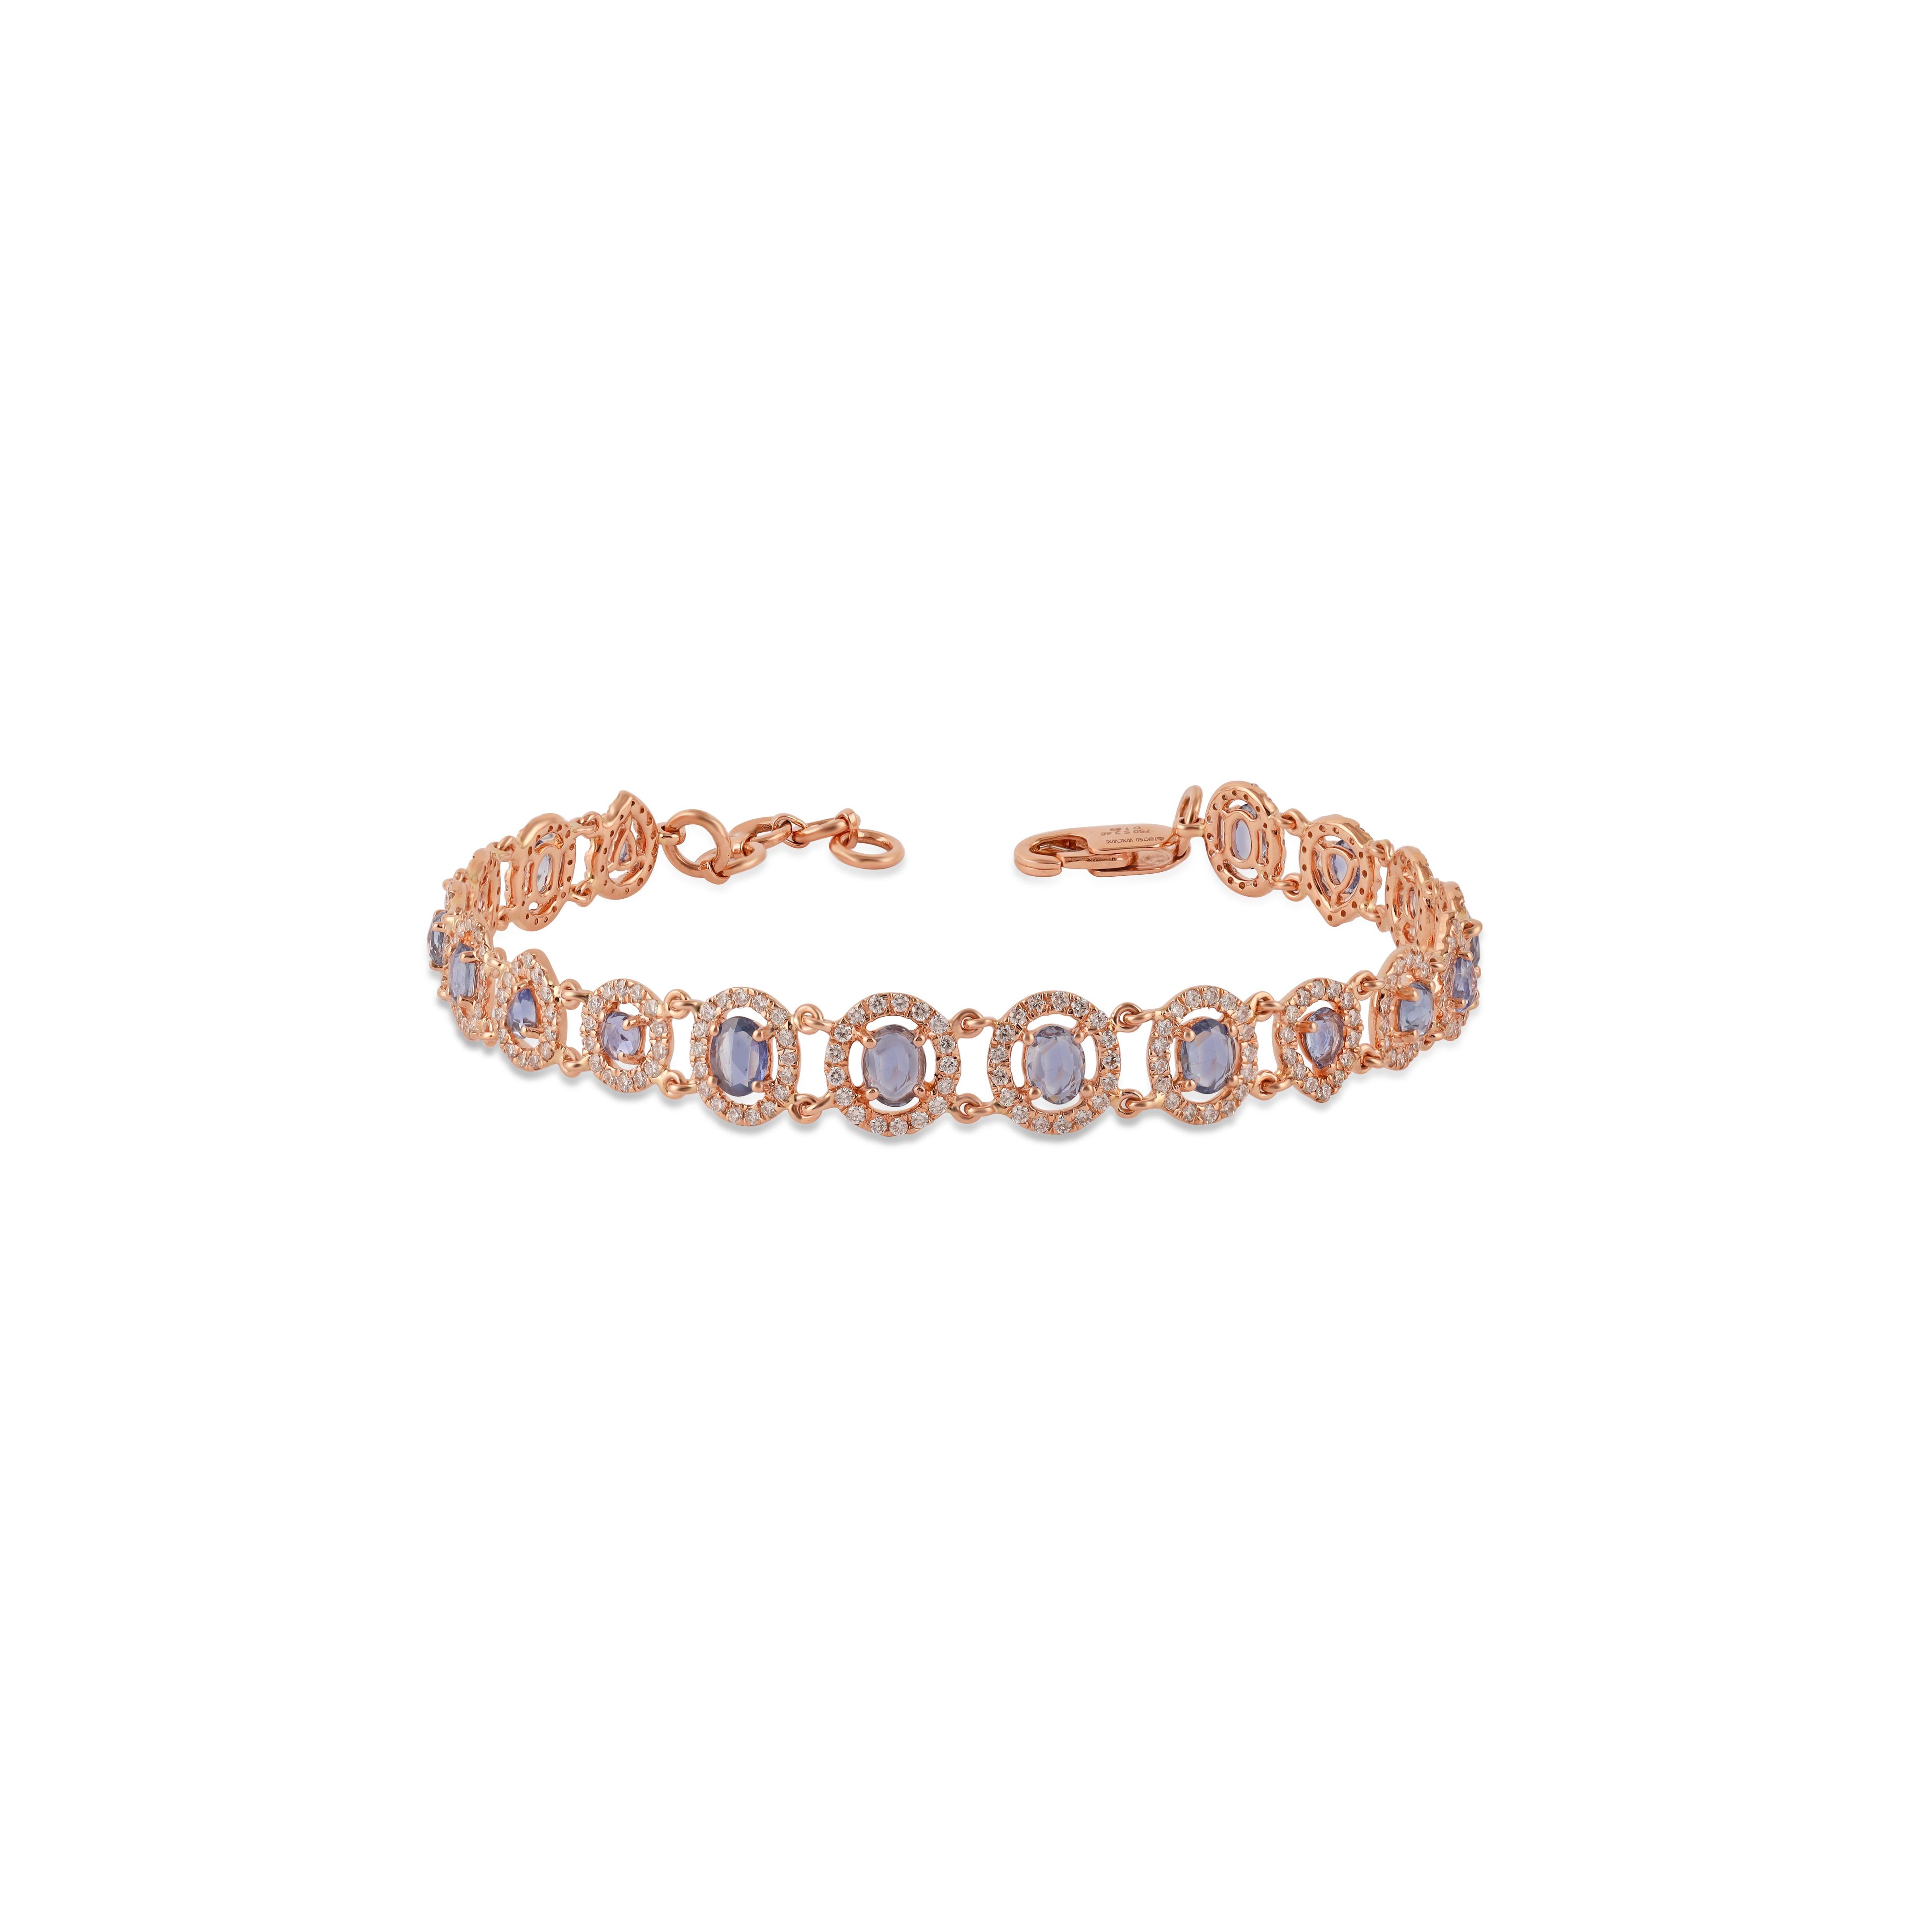 Un très beau et délicat bracelet à chaîne de saphirs en or rose 18 carats et diamants. Le poids des saphirs multiples est de 3.46 carats. Le poids des diamants est de 1,89 carat. Le poids net de l'or est de 8.63 grammes.


Taille - normale 6.5